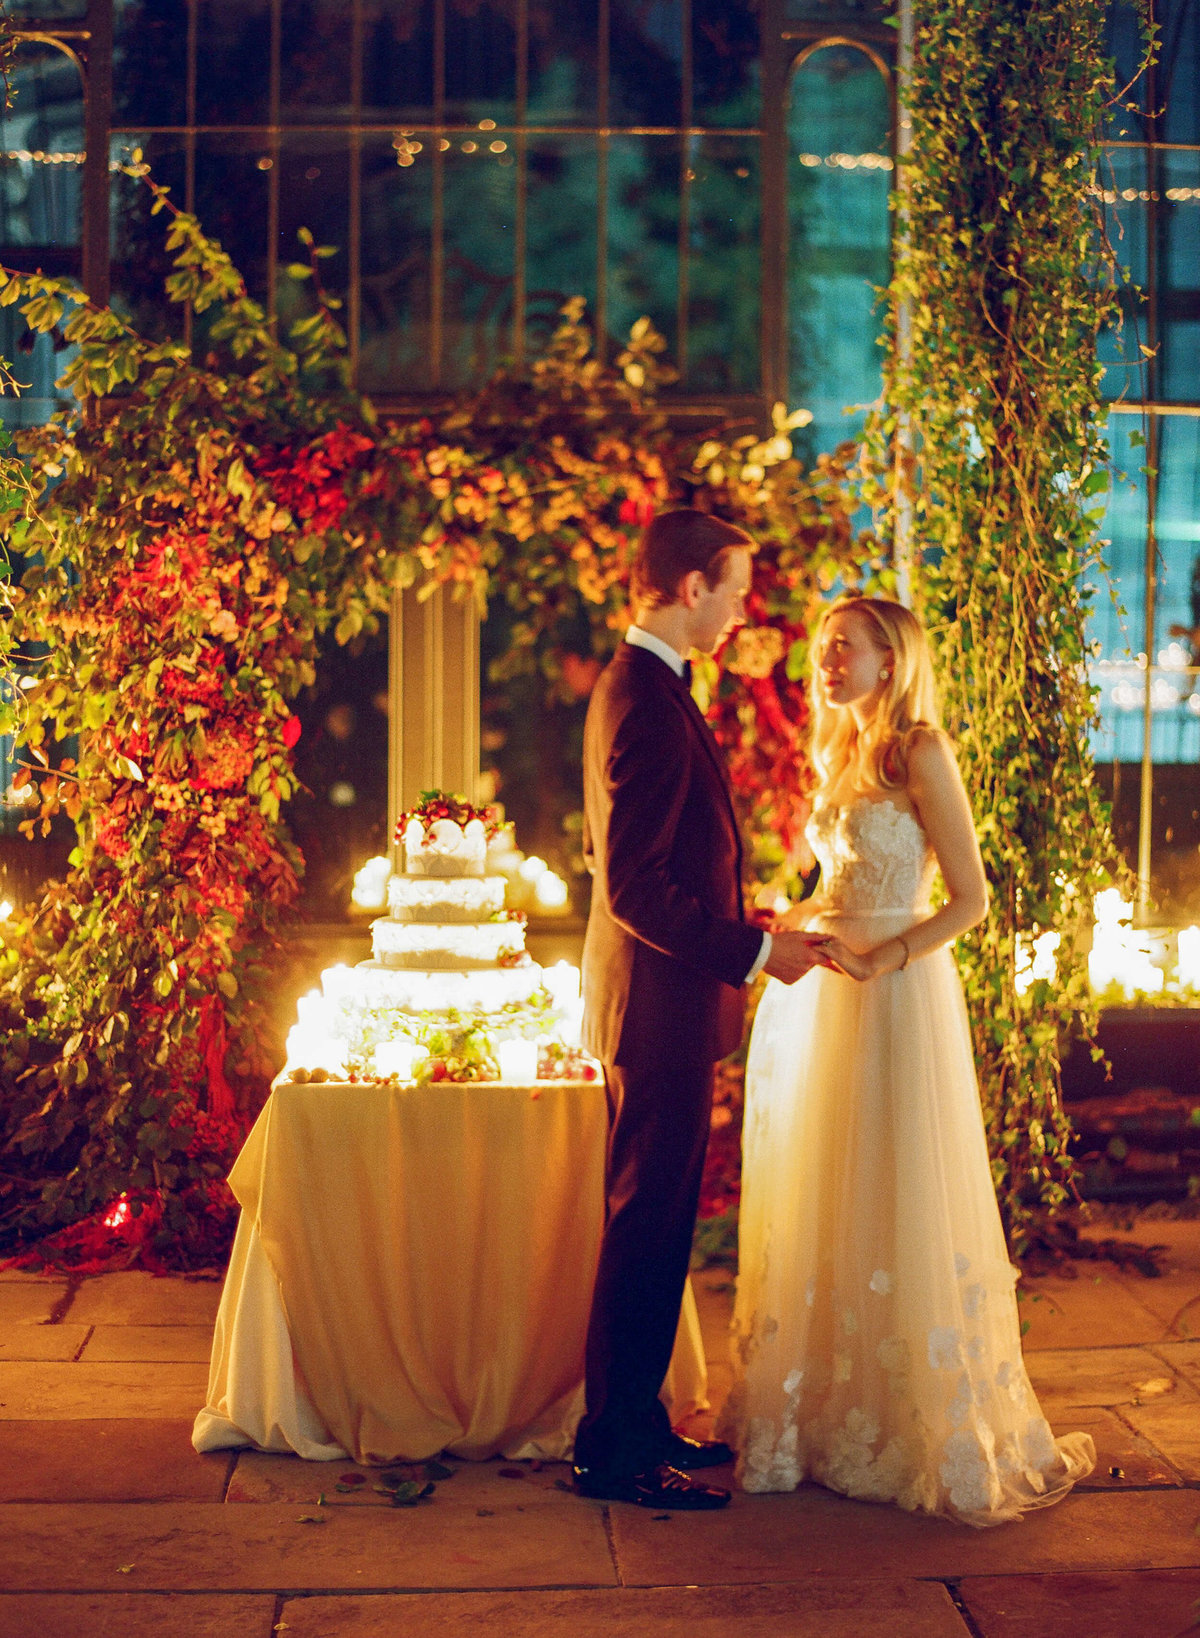 75-KTMerry-weddings-candlelit-cake-bride-groom-Ireland